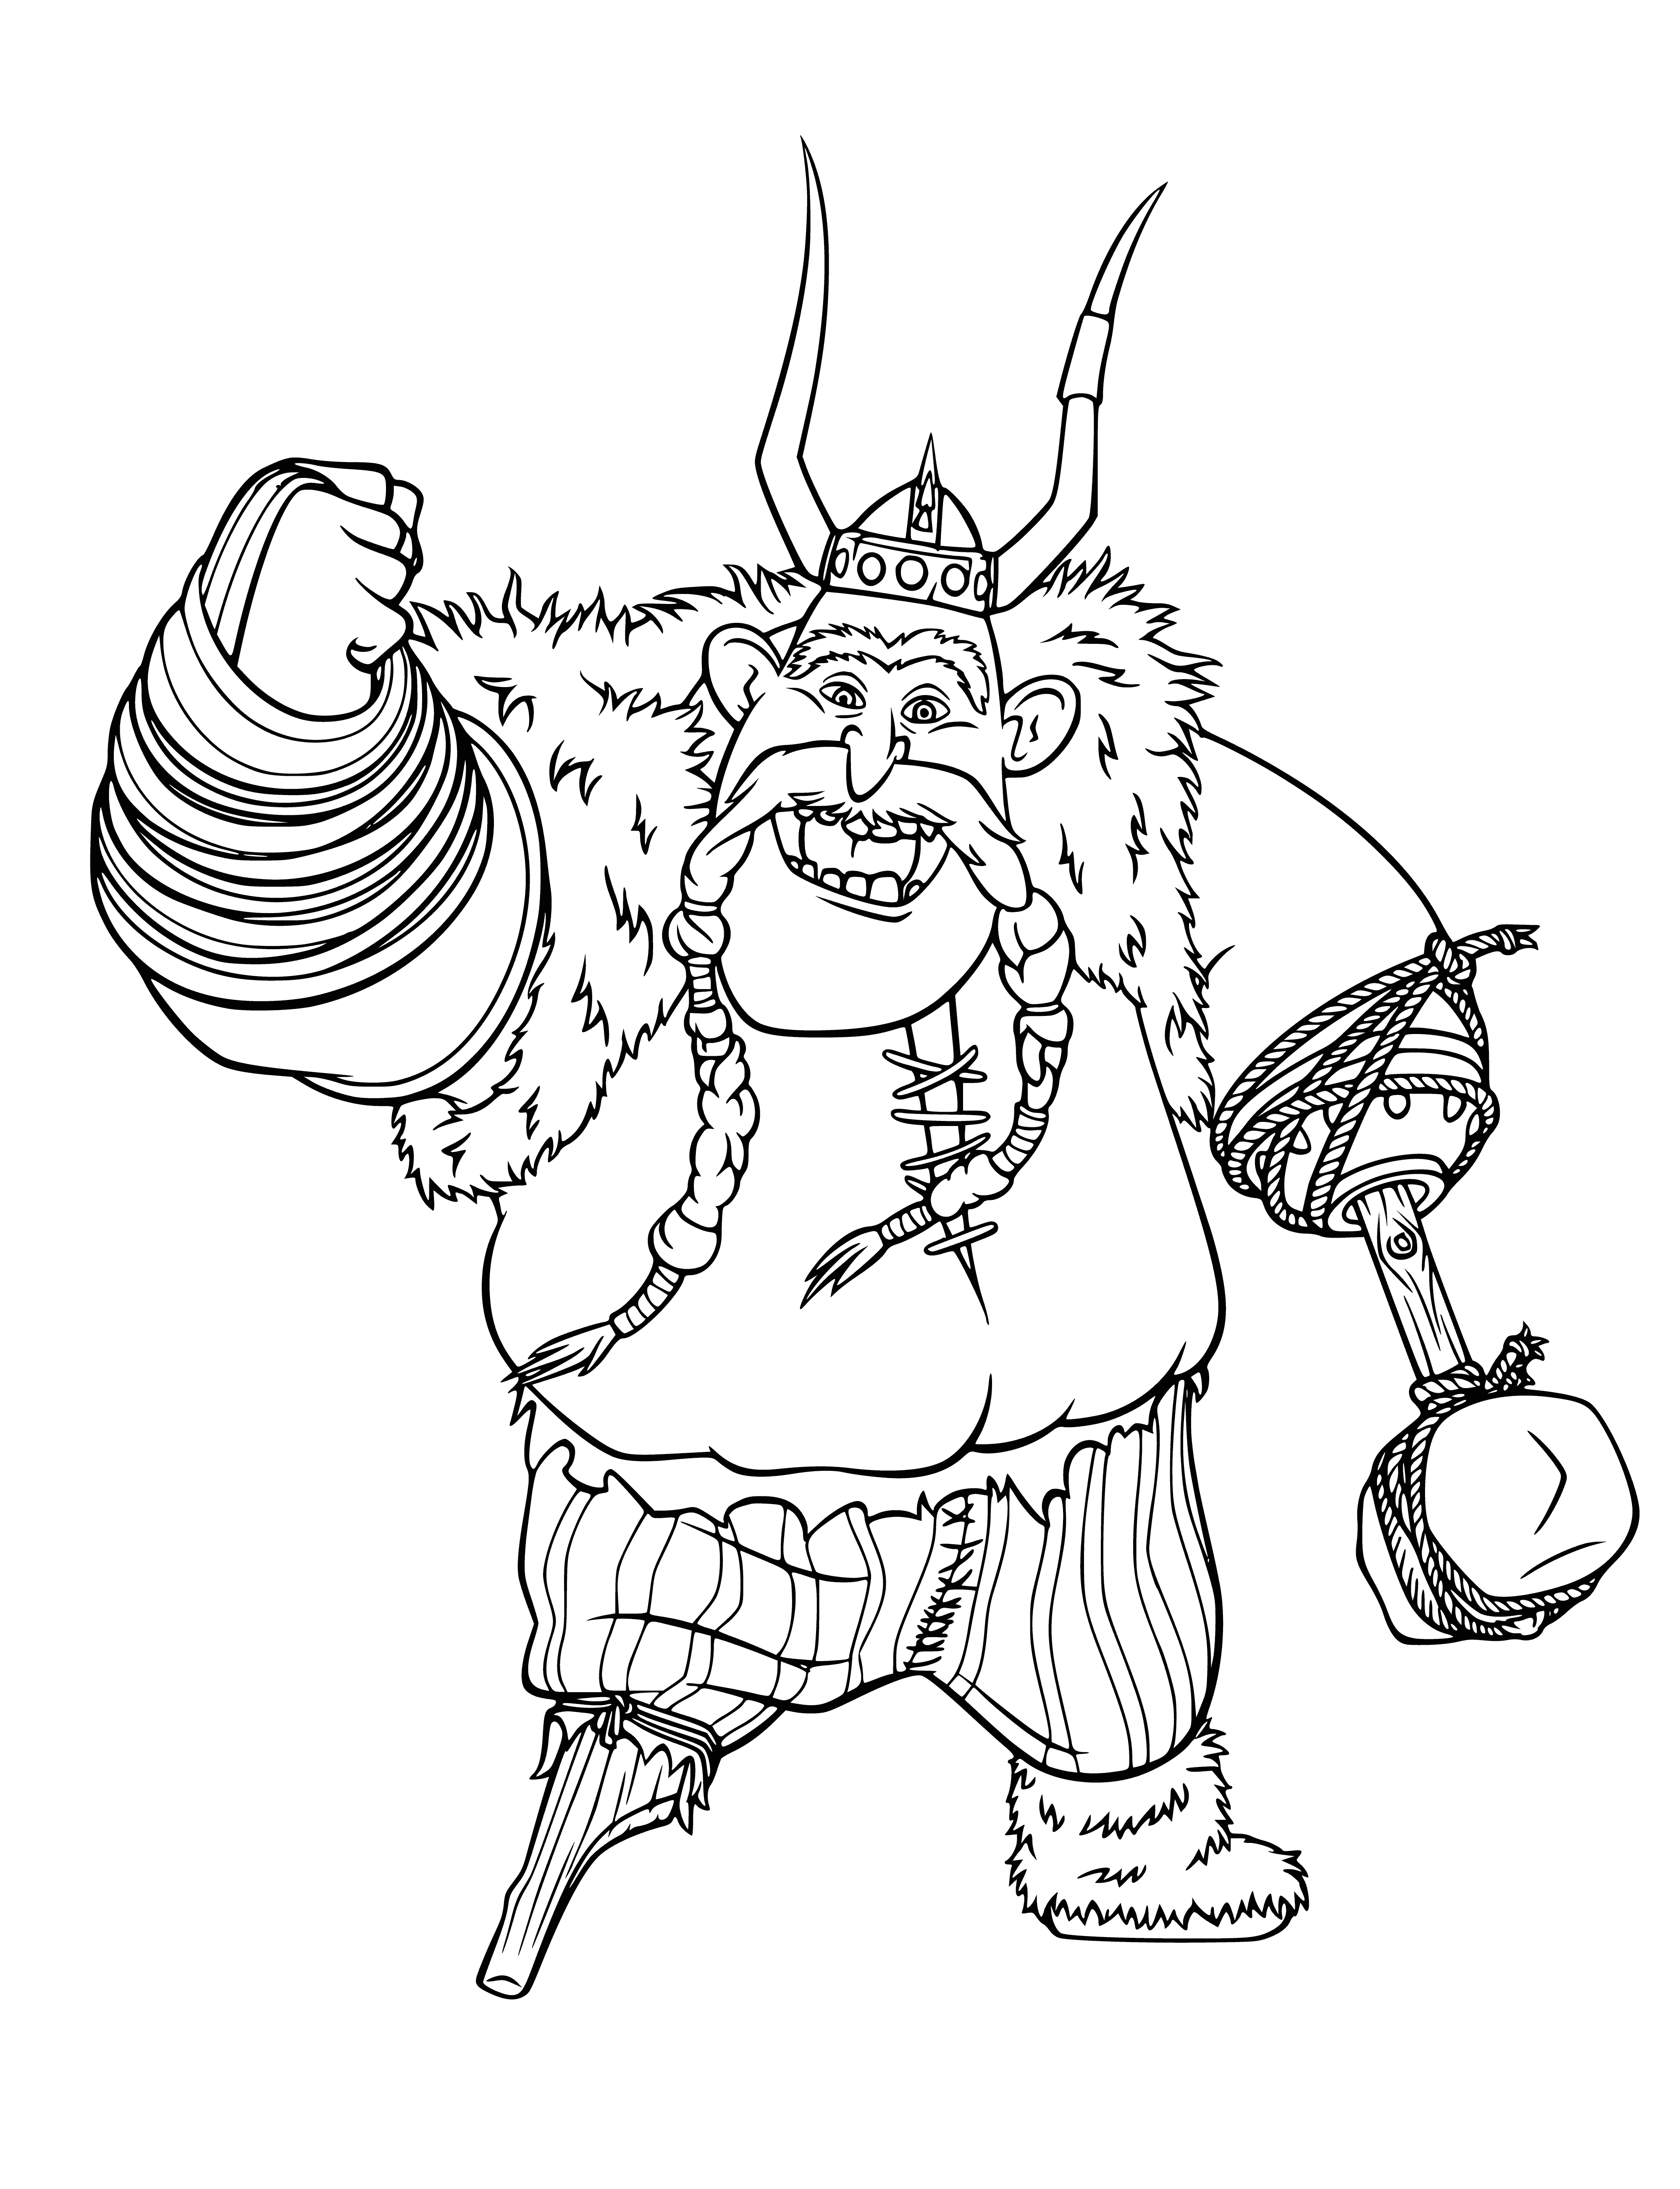 Viking Plevaka coloring page